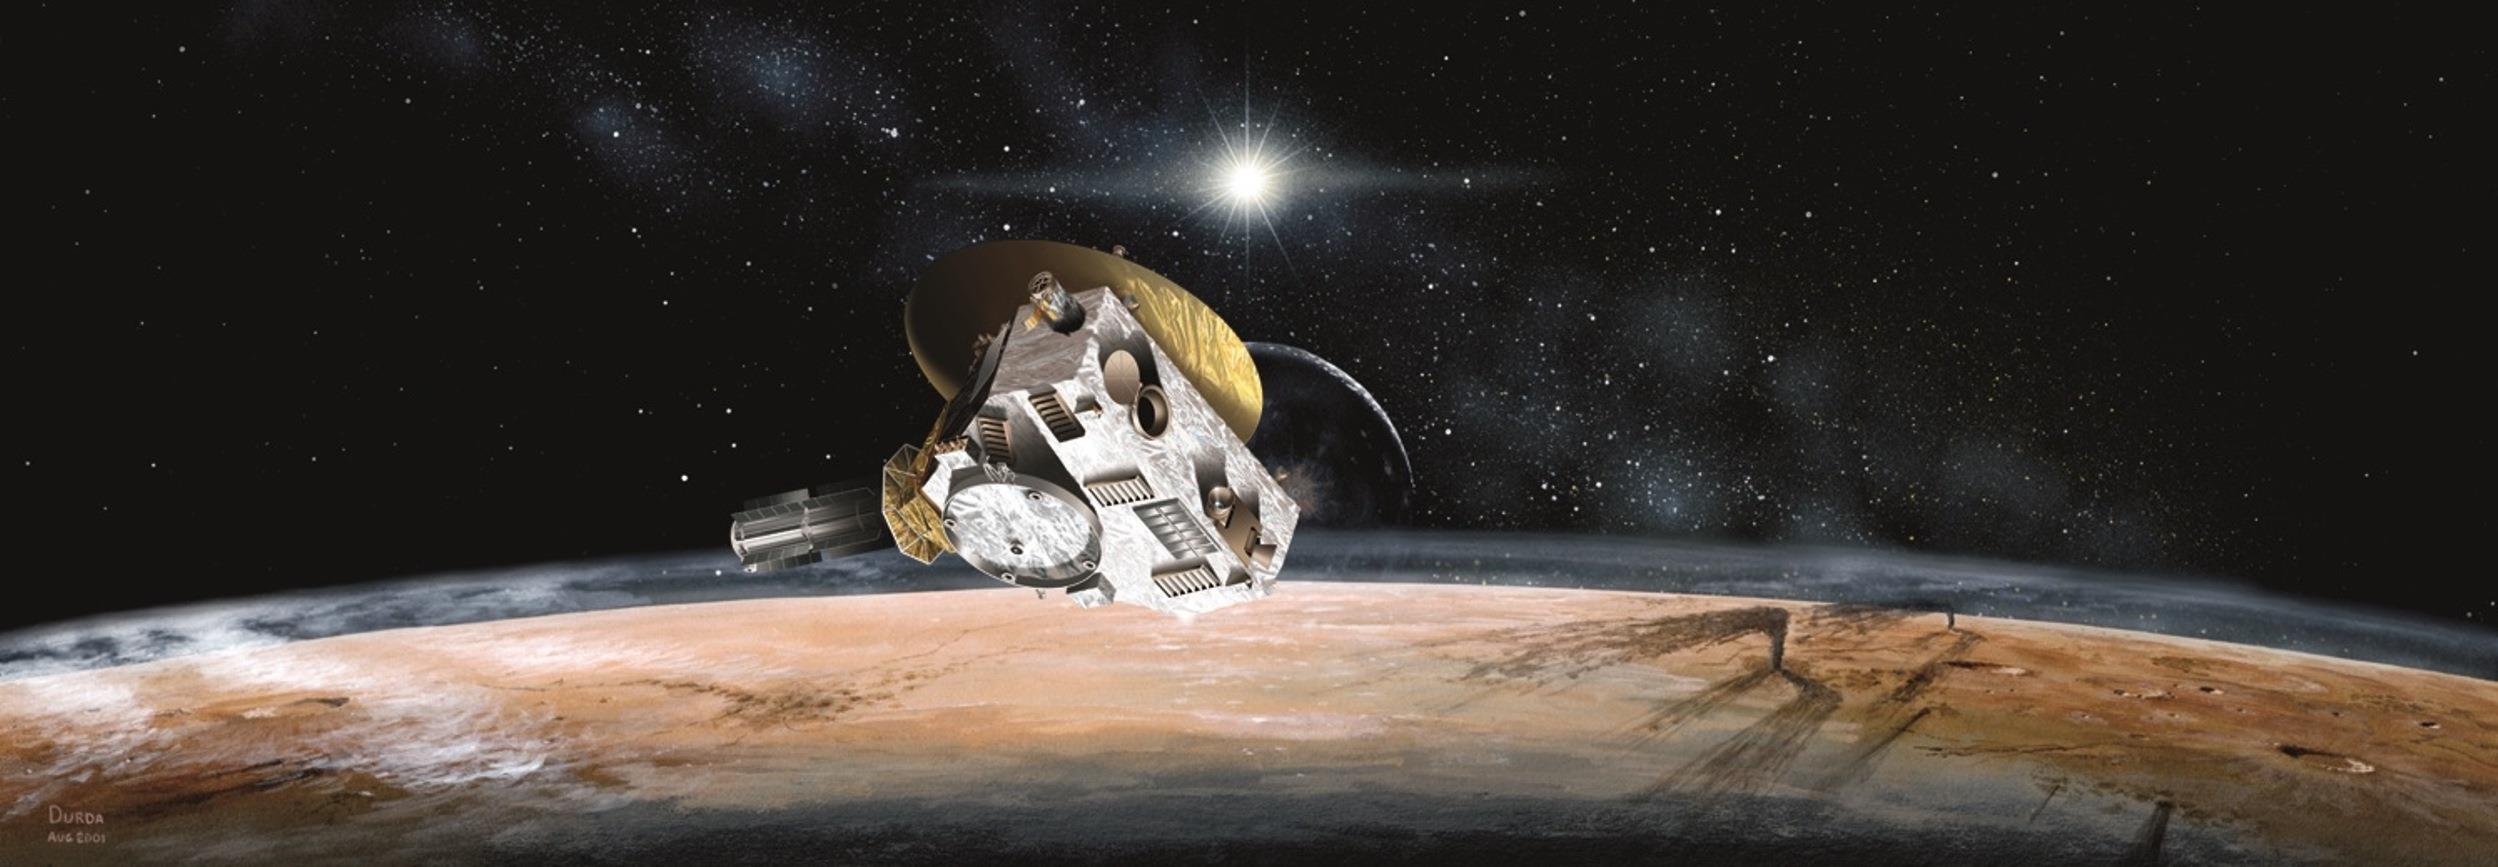 К поискам девятой планеты Солнечной системы предлагается привлечь зонд New Horizons - 2